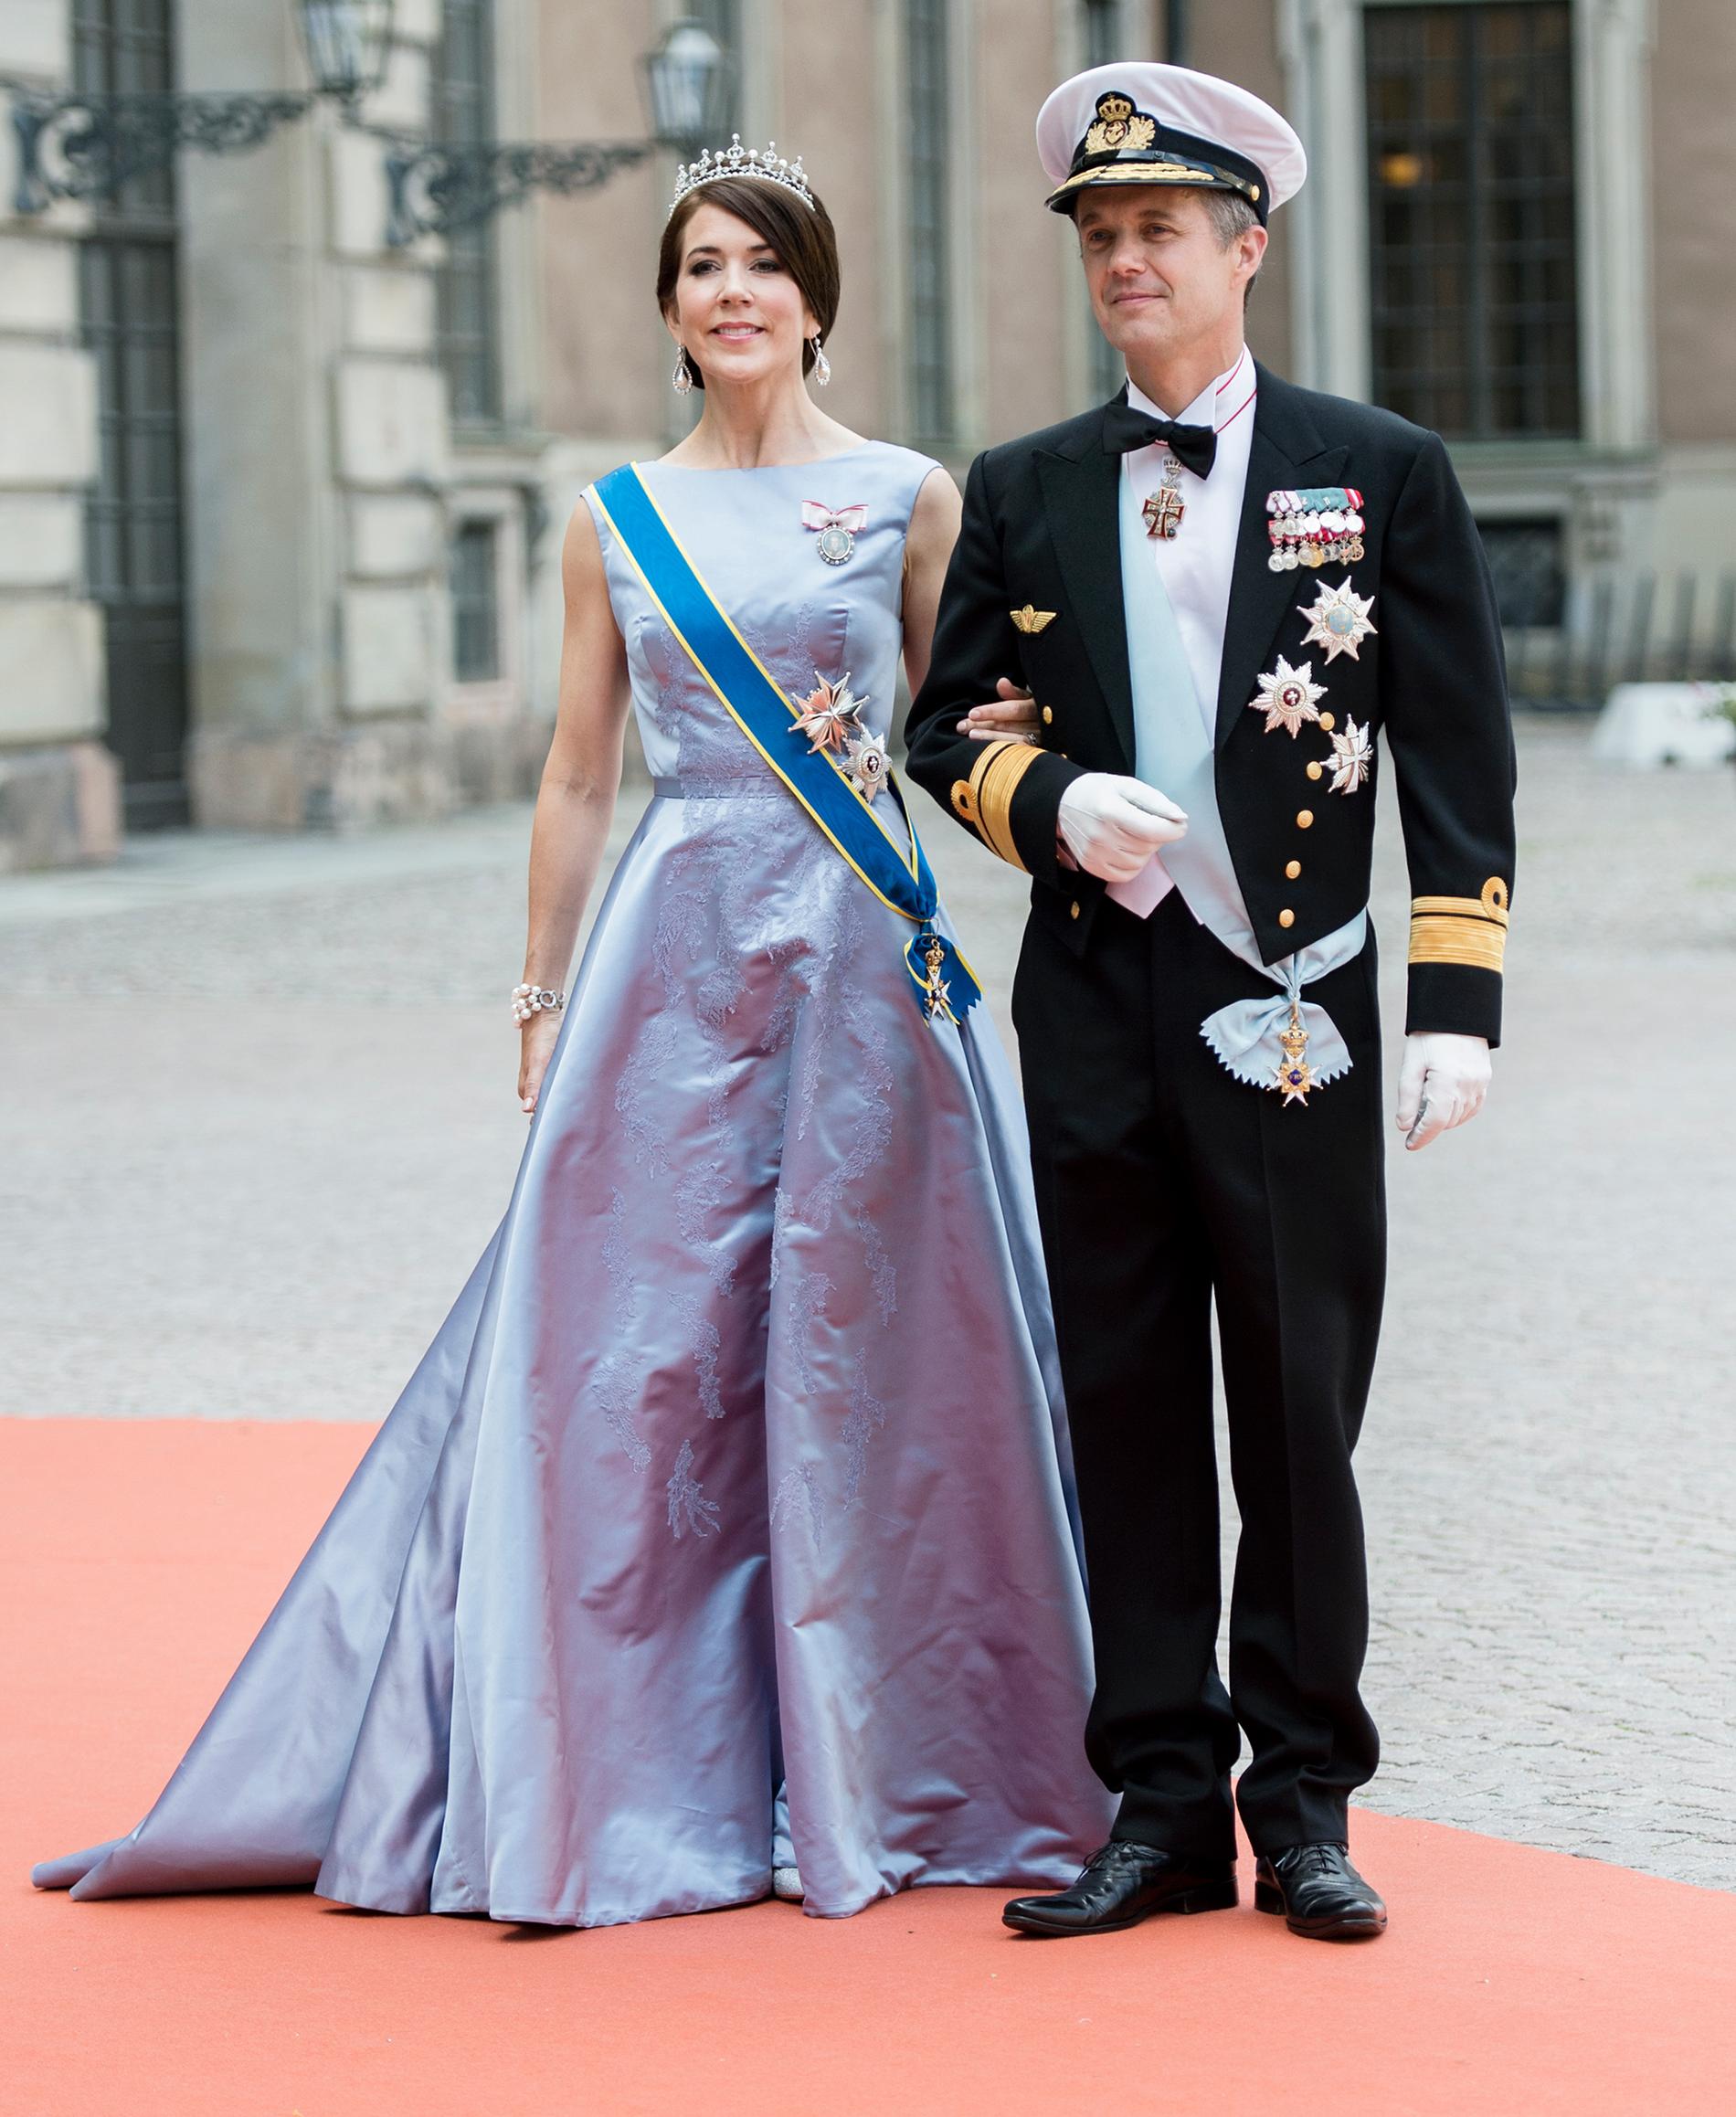 Danmarks kronprins Fredrik blir fadder. Här med hustrun Mary.